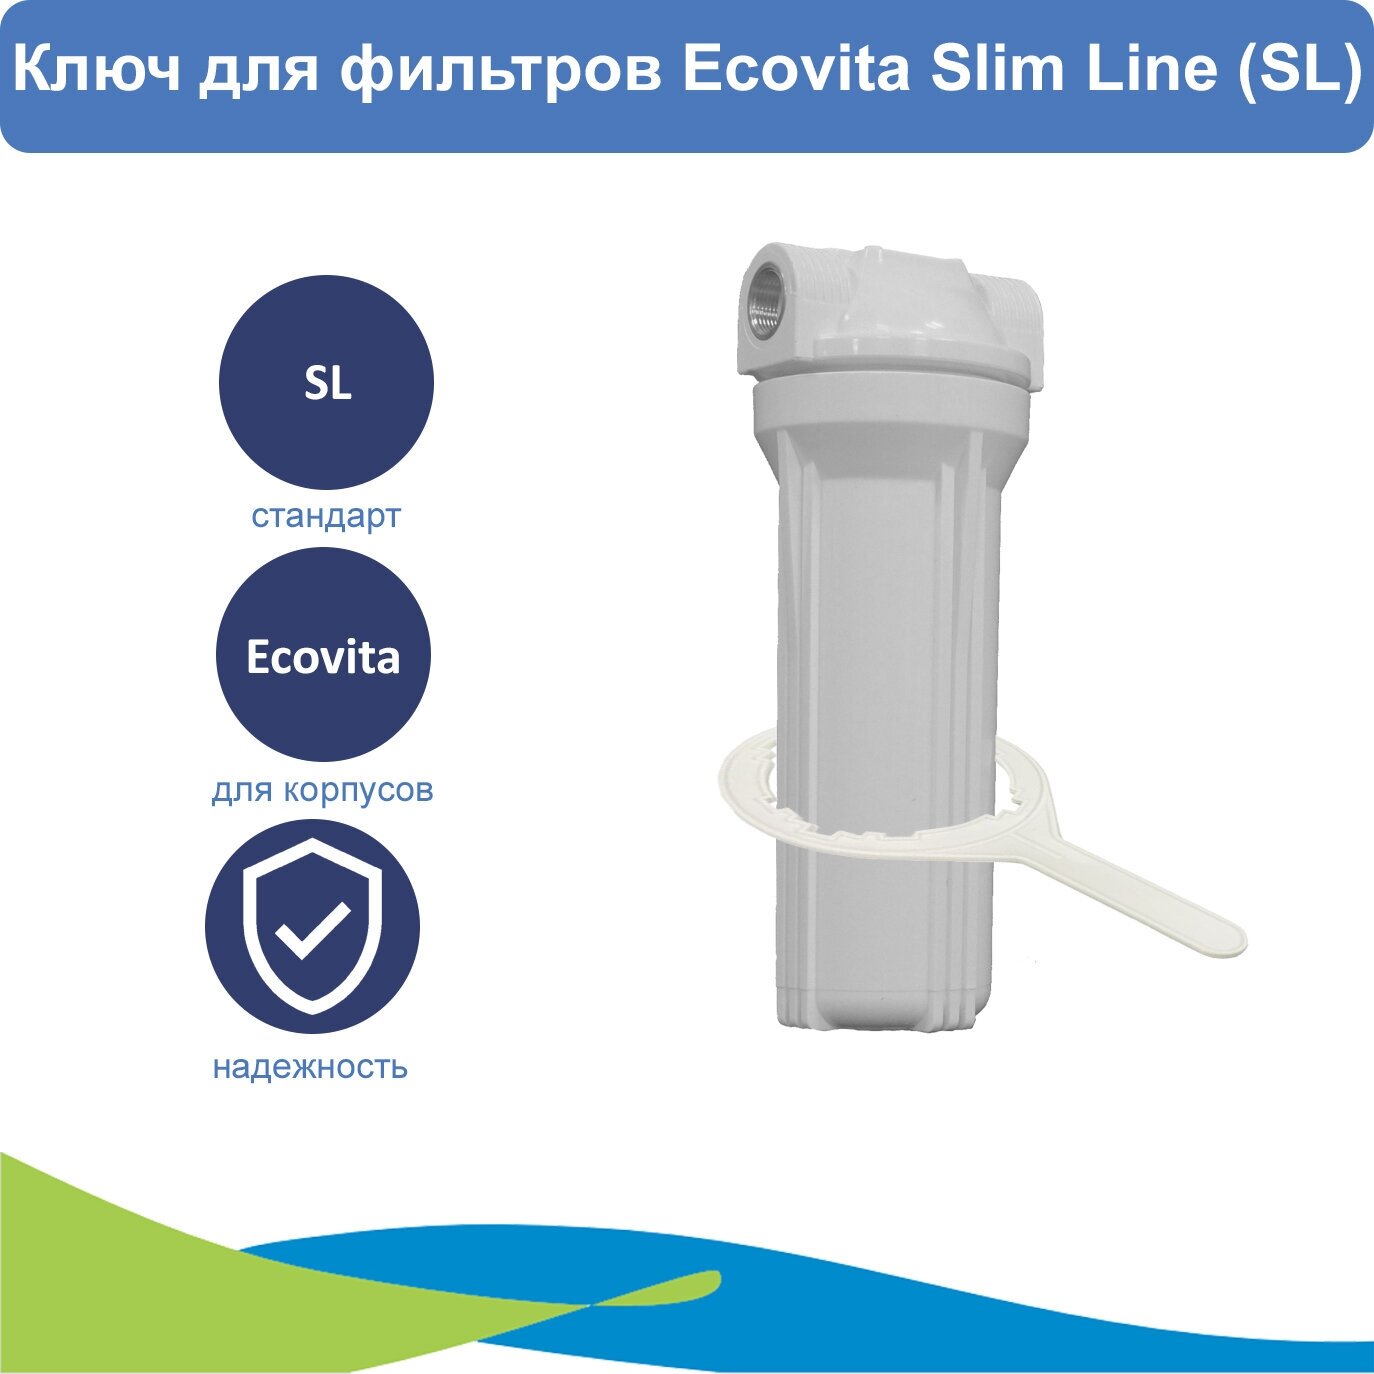 Ключ для фильтров Ecovita Slim Line (SL)